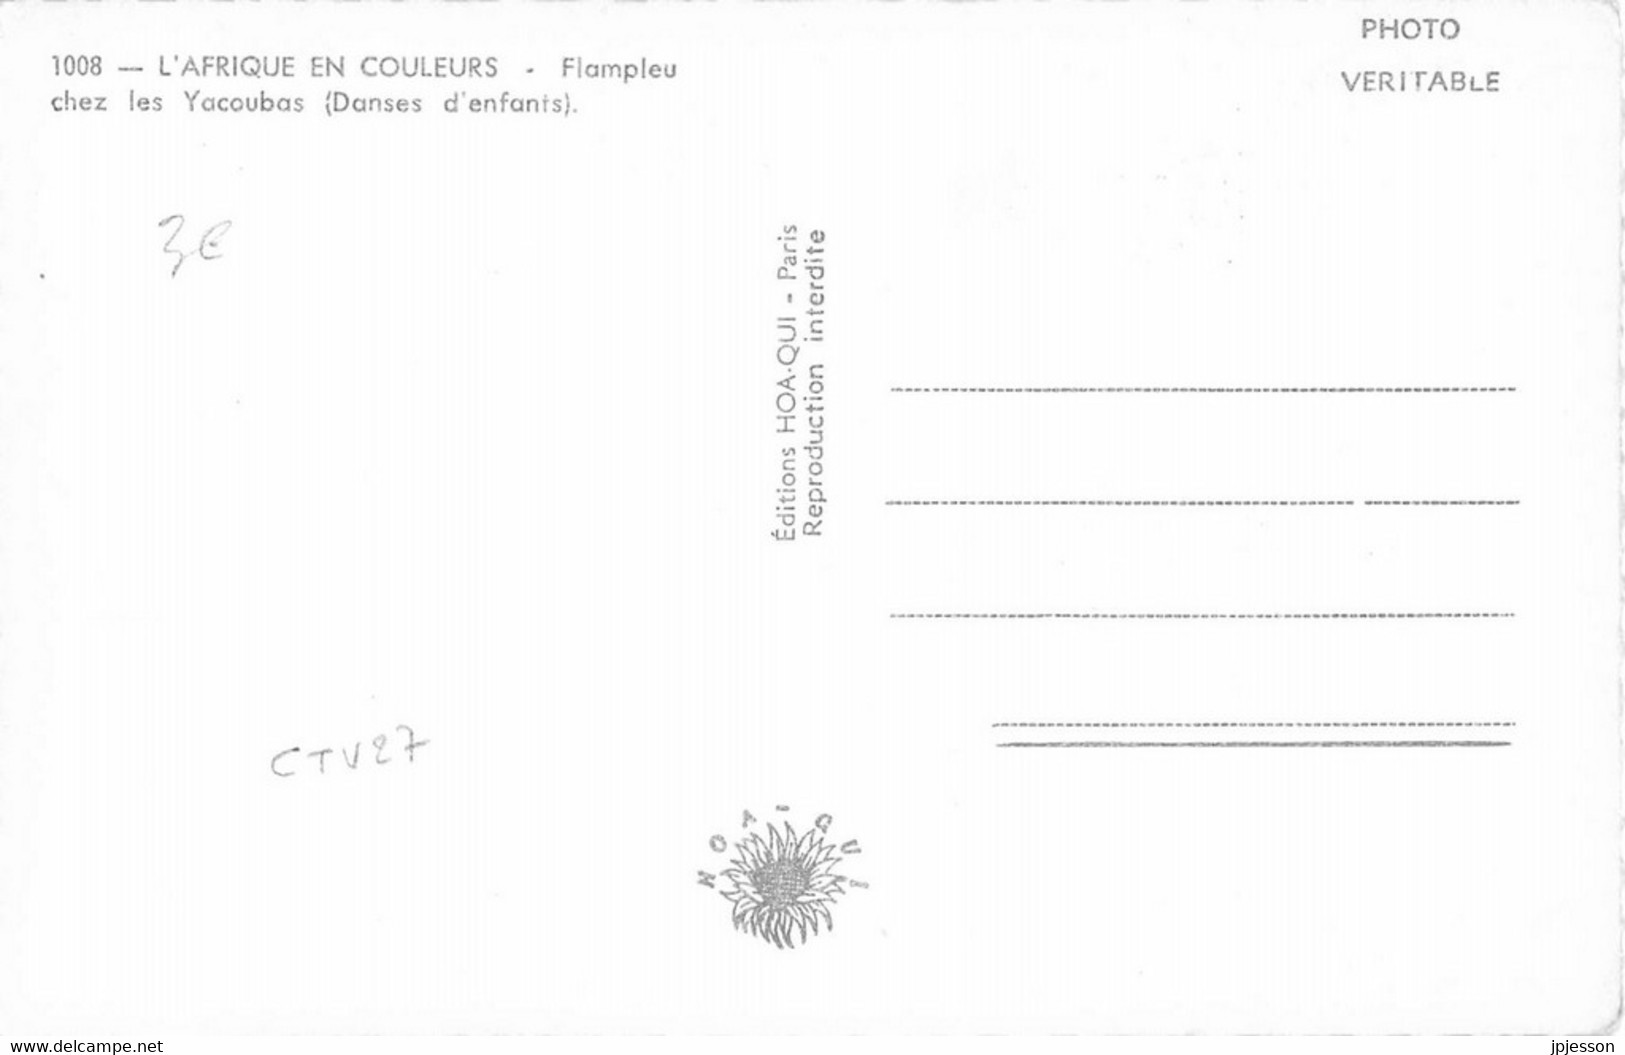 COTE D'IVOIRE - FLAMPLEU CHEZ LES YACOUBAS ( DANSES D'ENFANTS ) - "L'AFRIQUE EN COULEURS" 1008 - Côte-d'Ivoire